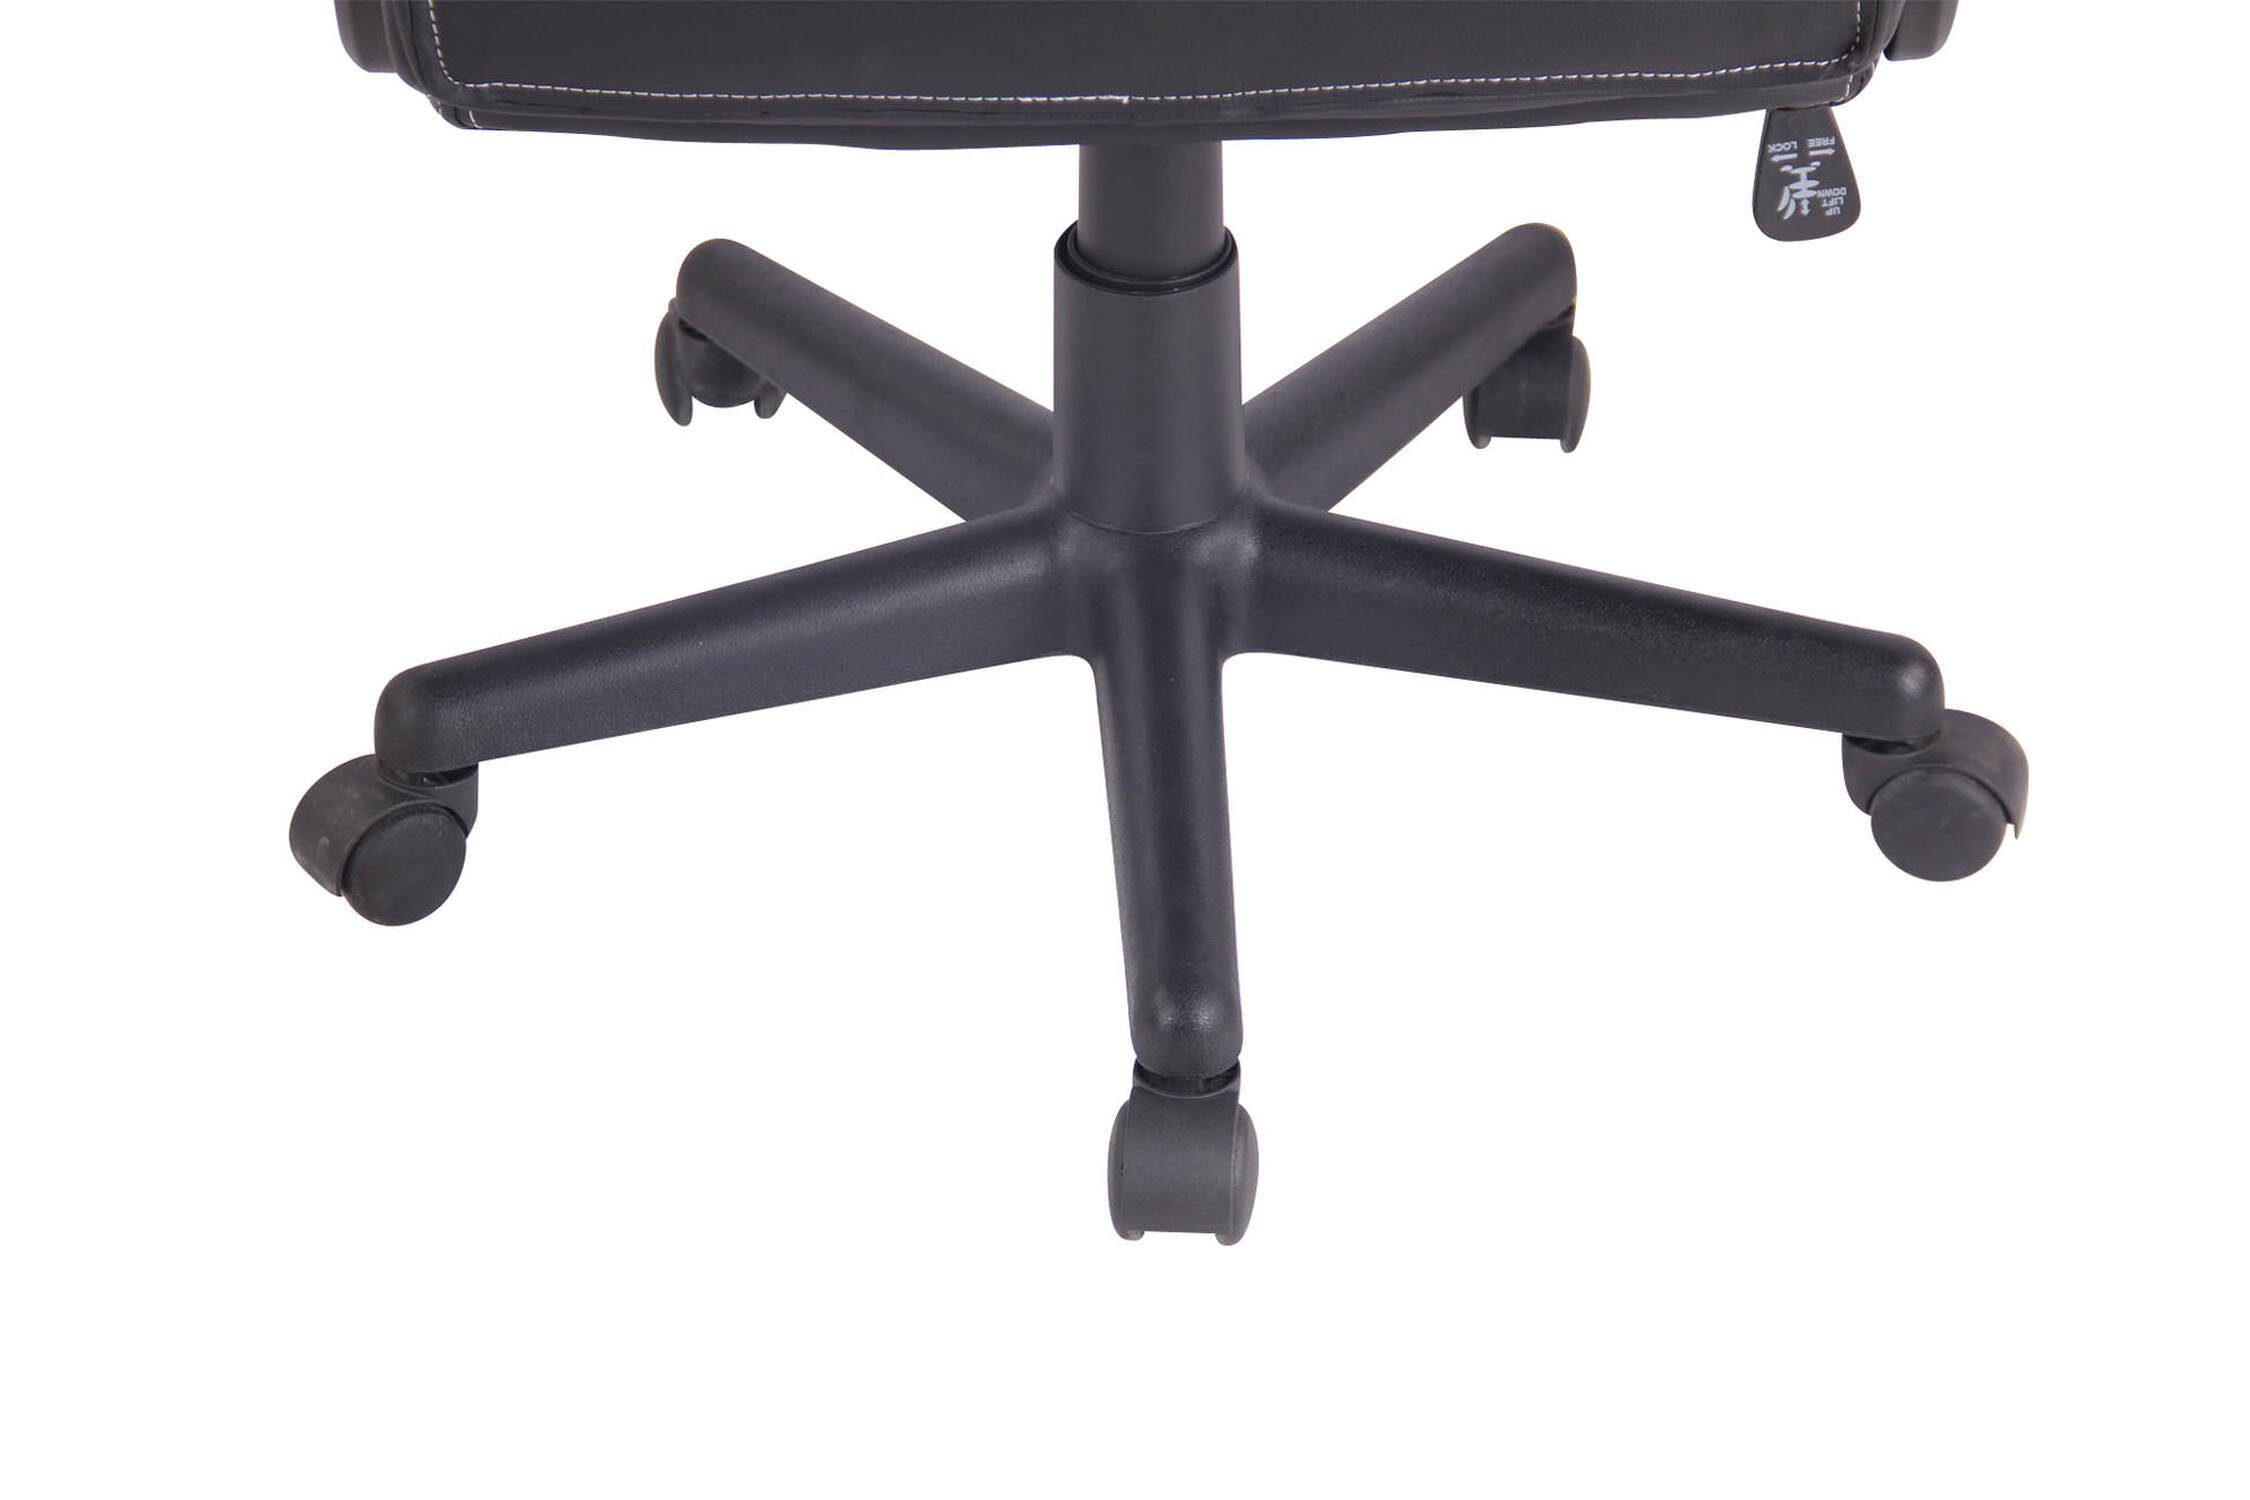 TPFLiving Gaming-Stuhl Elon mit bequemer - (Schreibtischstuhl, und Sitz: XXL), - Kunstleder, Chefsessel, Drehstuhl, Bürostuhl Gestell: Kunststoff Netzbezug schwarz schwarz/weiß drehbar Rückenlehne 360° höhenverstellbar